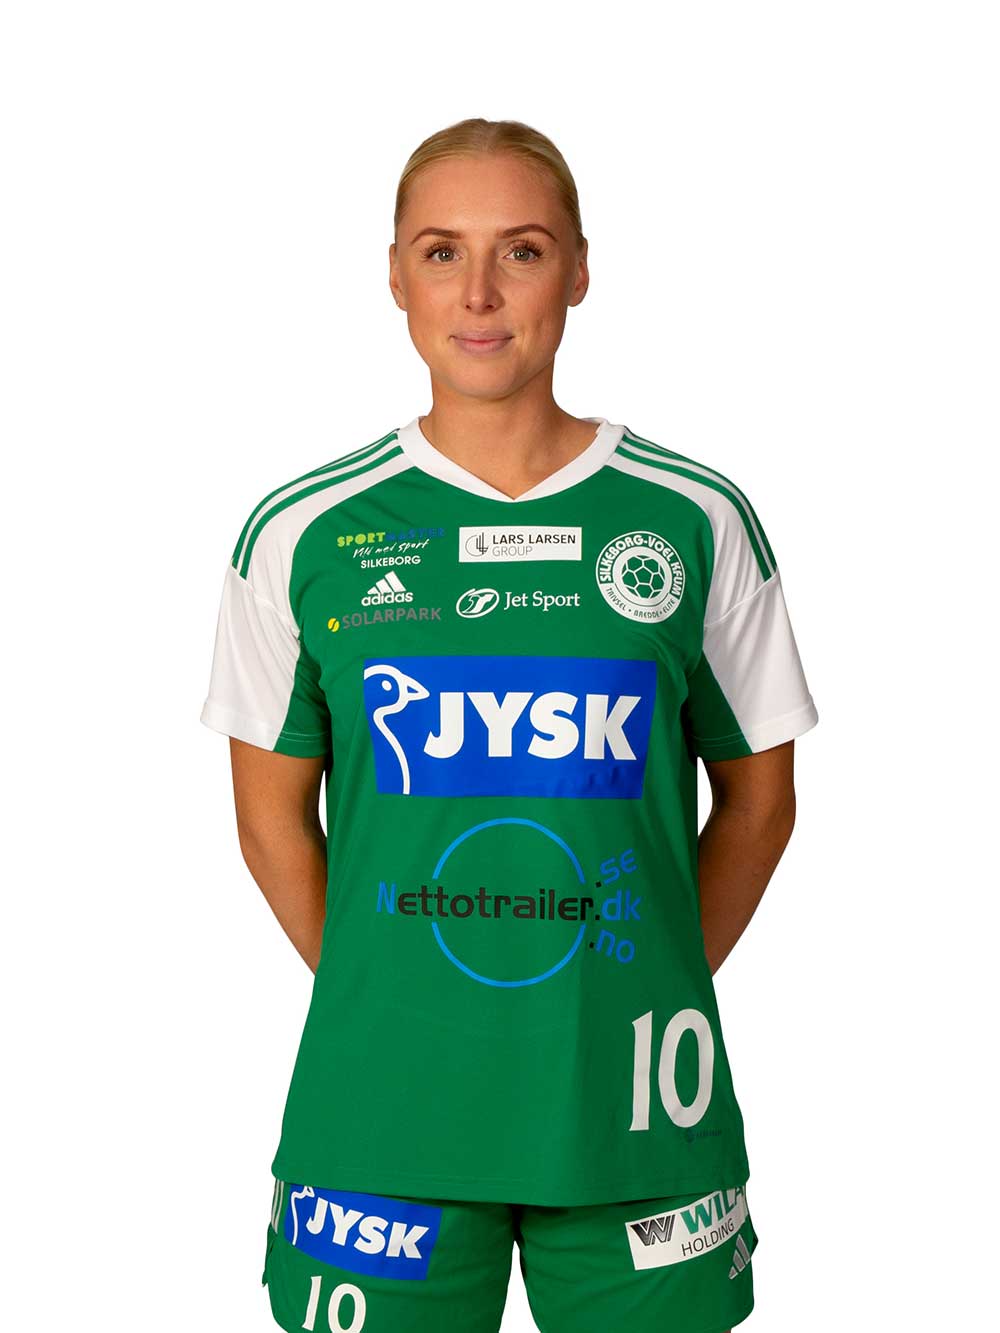 09 - Sofie Bæk